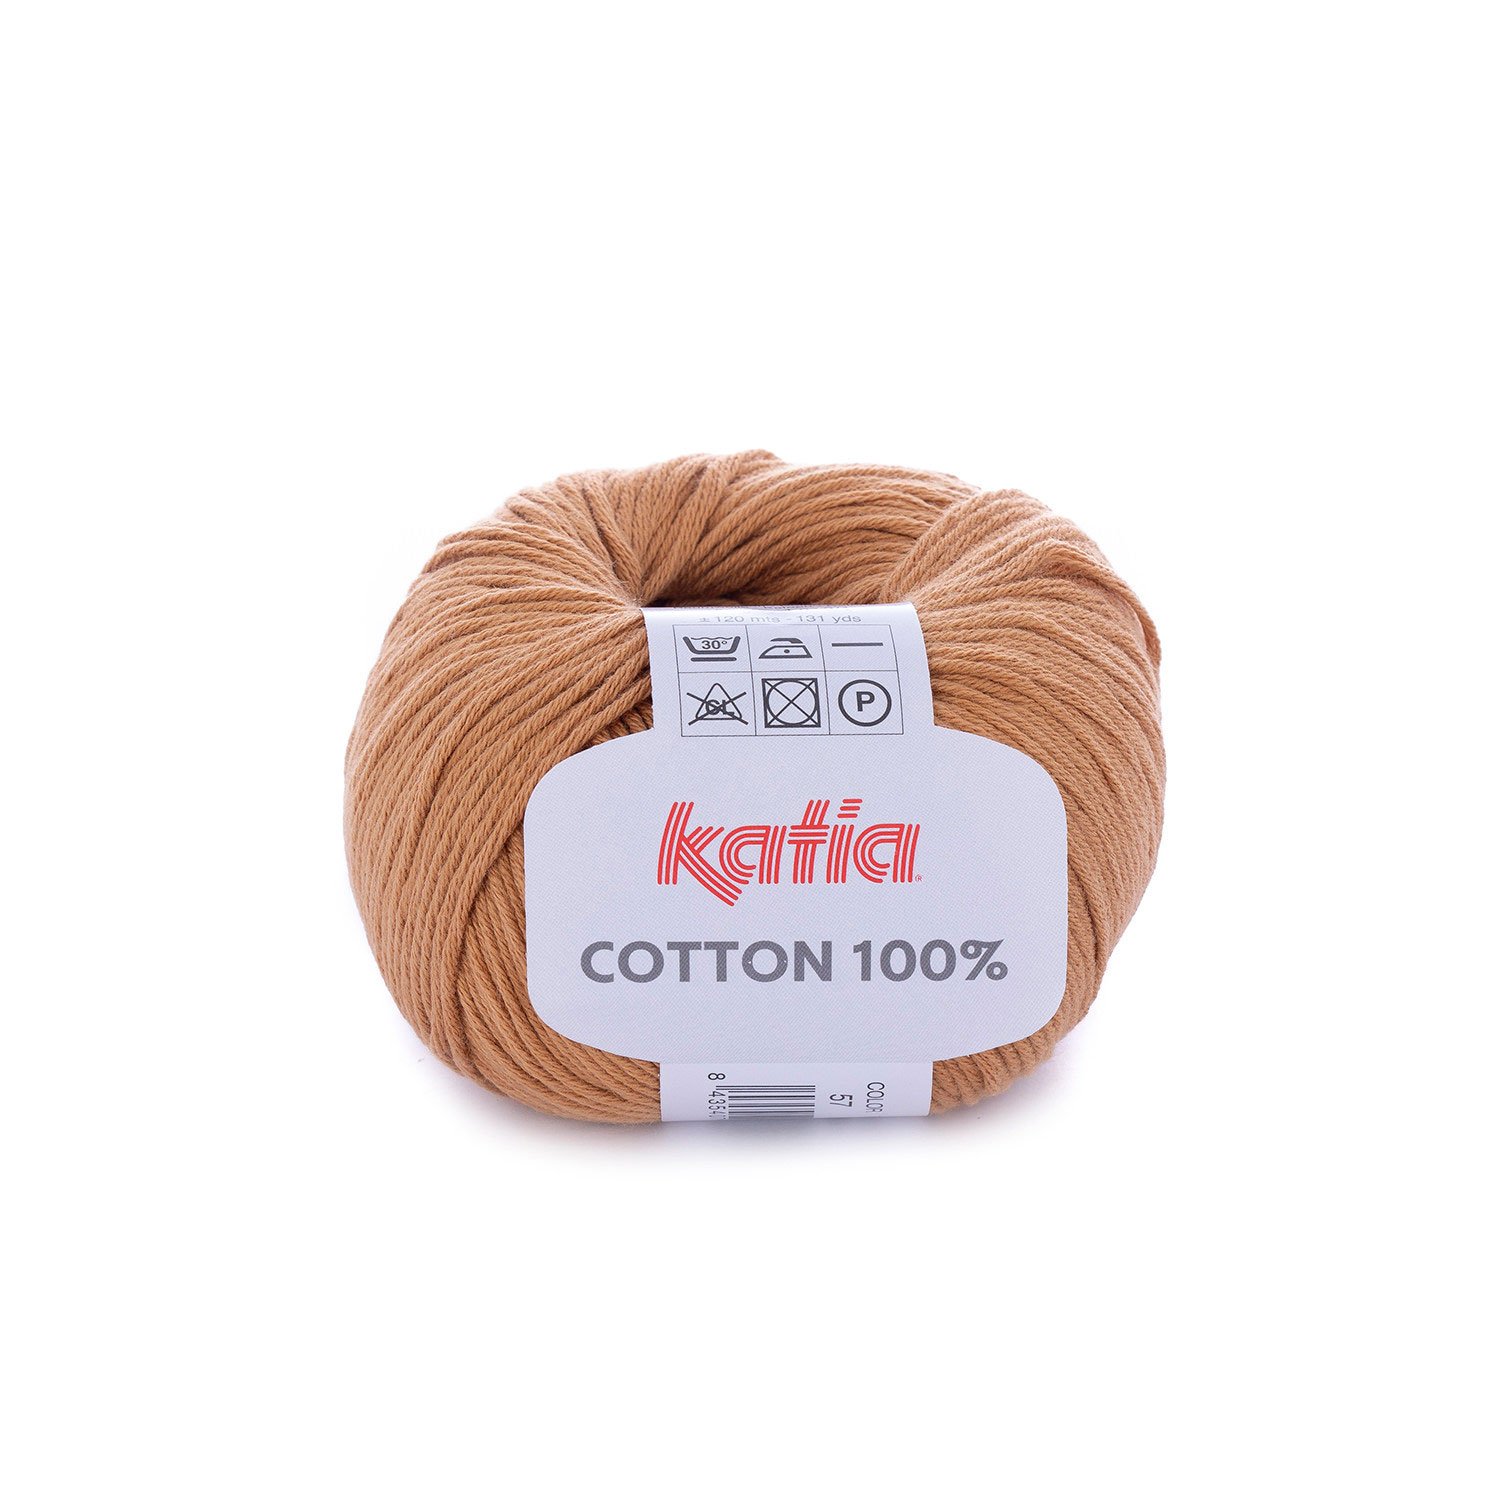  Hilo 100% algodón para tejer y hacer ganchillo, 3 o